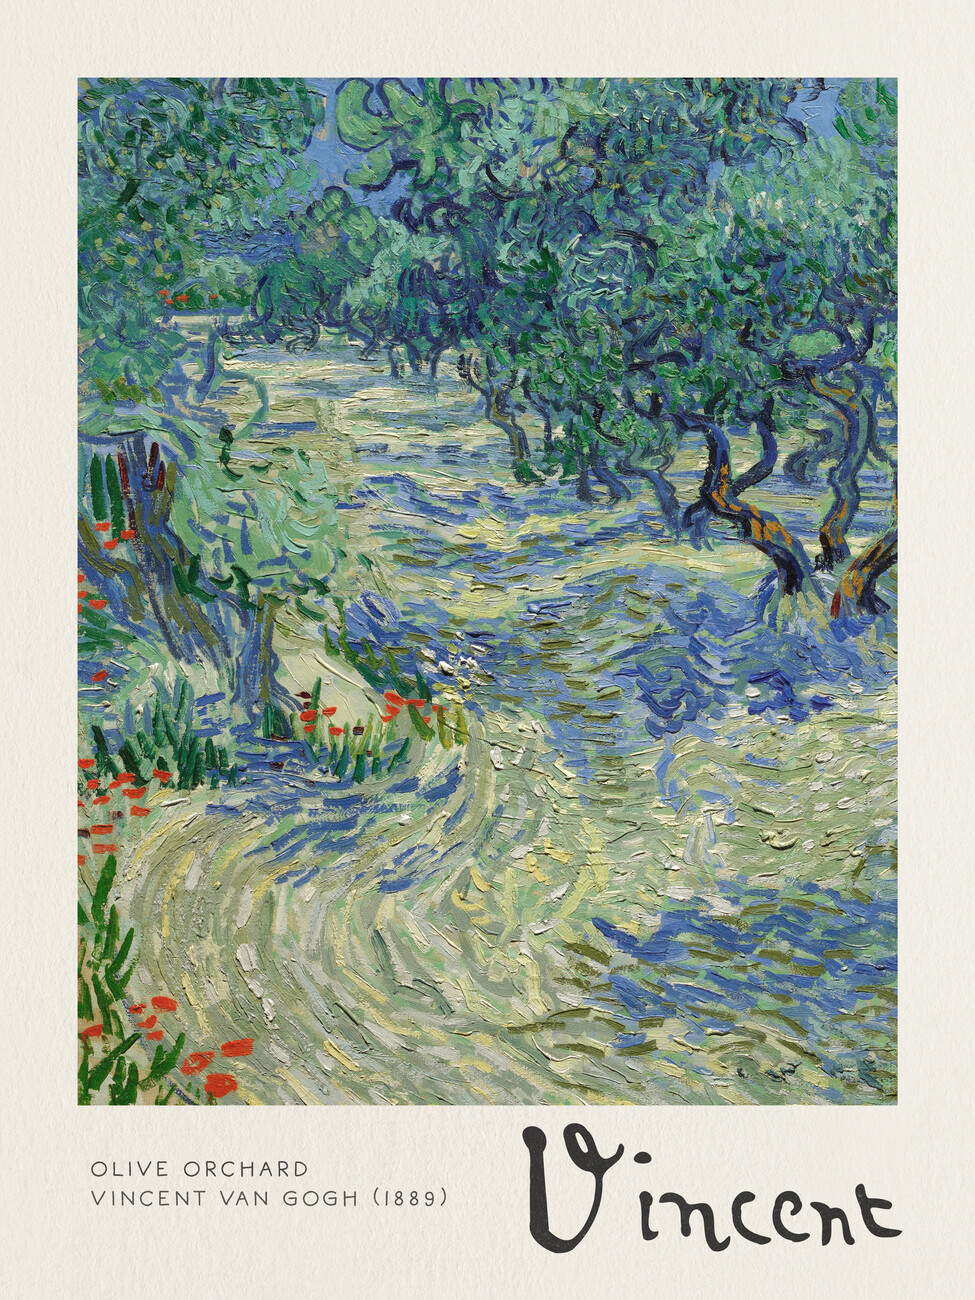 Reprodução do quadro Olive Orchard - Vincent van Gogh